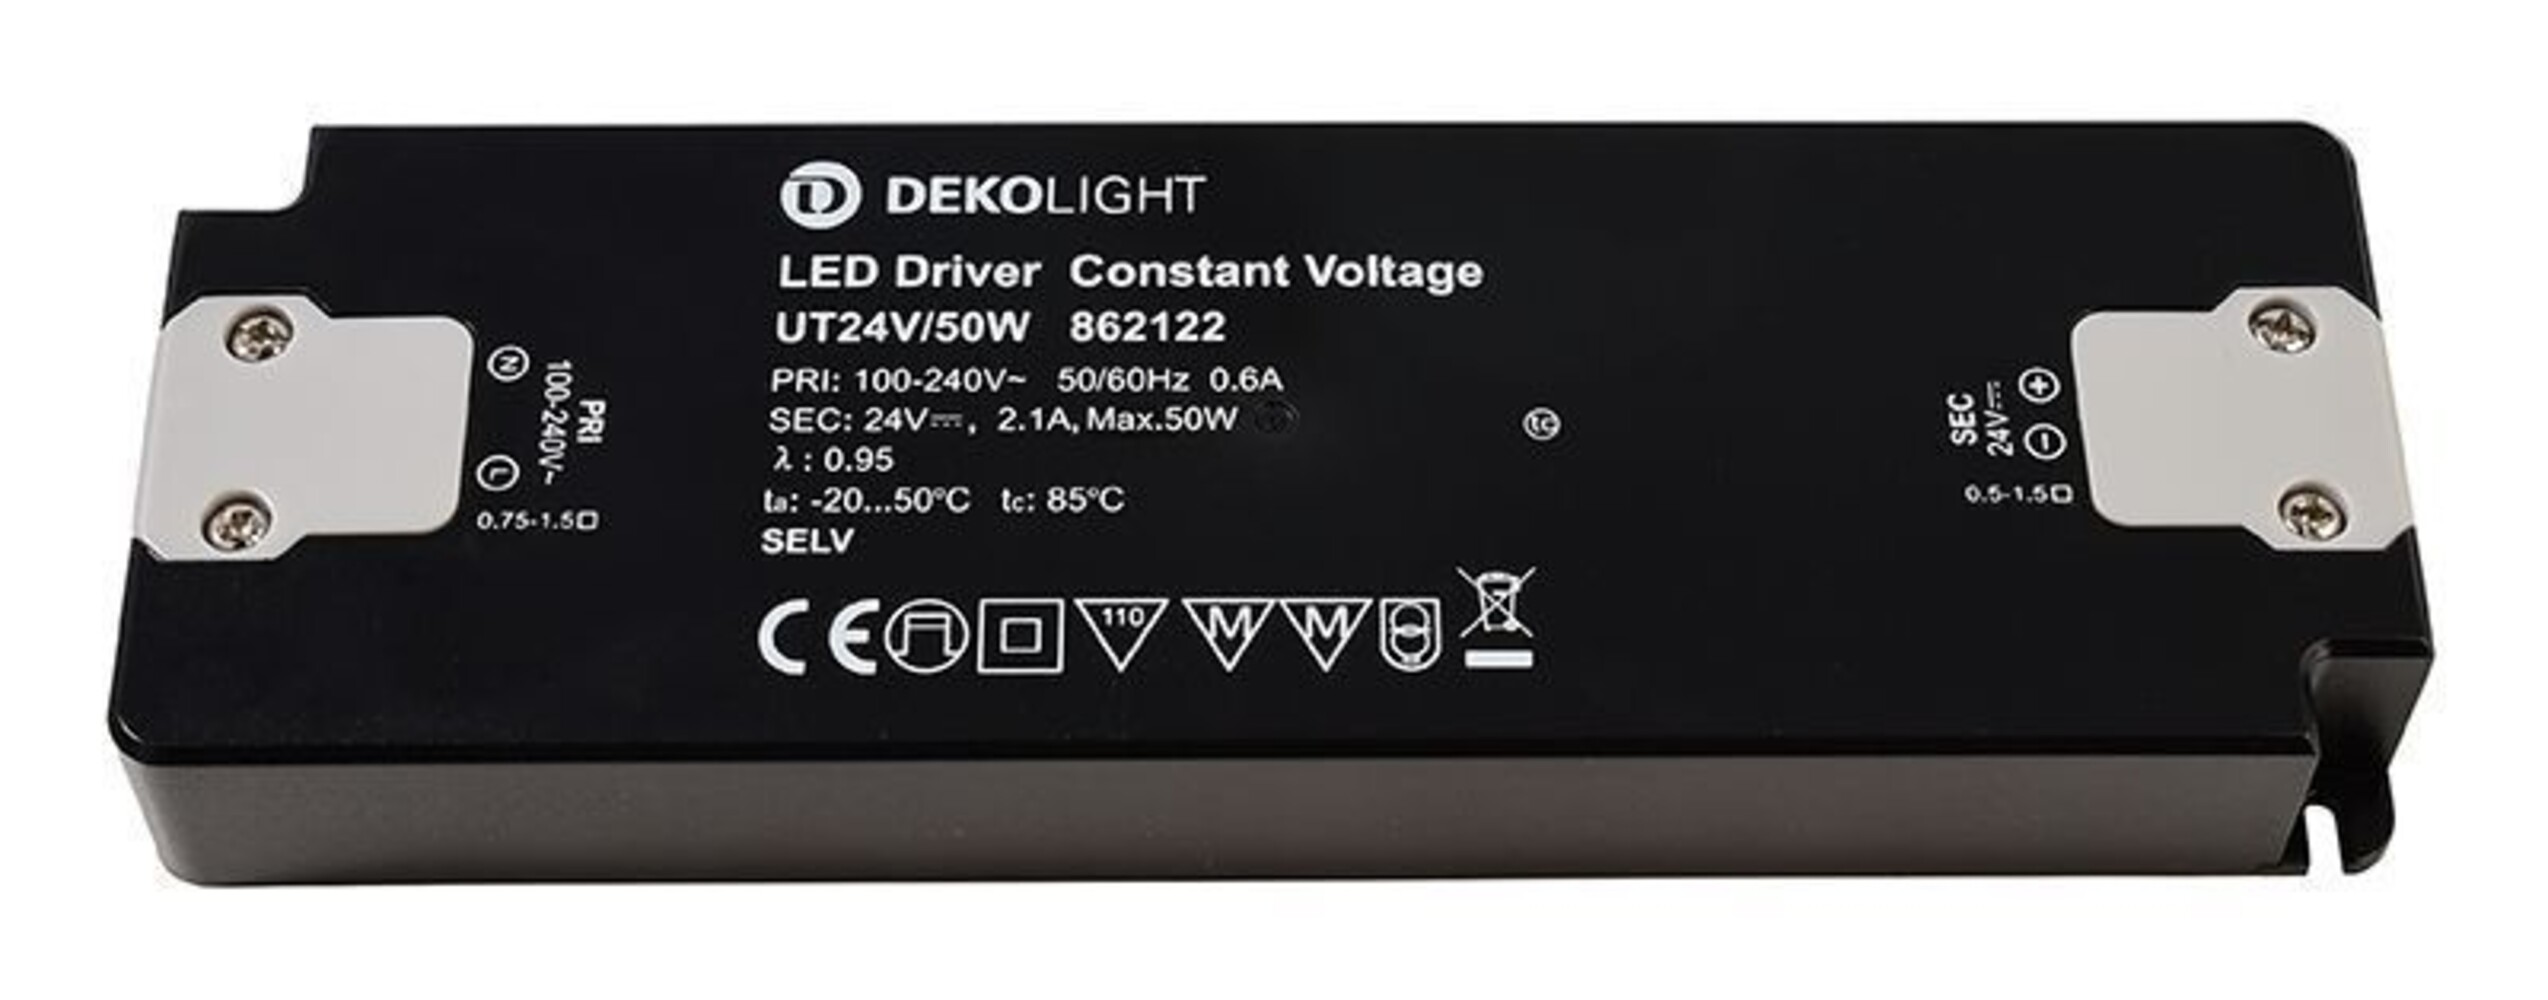 Hochwertiges LED Netzteil von der Marke Deko-Light, ausgezeichnet durch seine konstante Spannung und effiziente Leistung